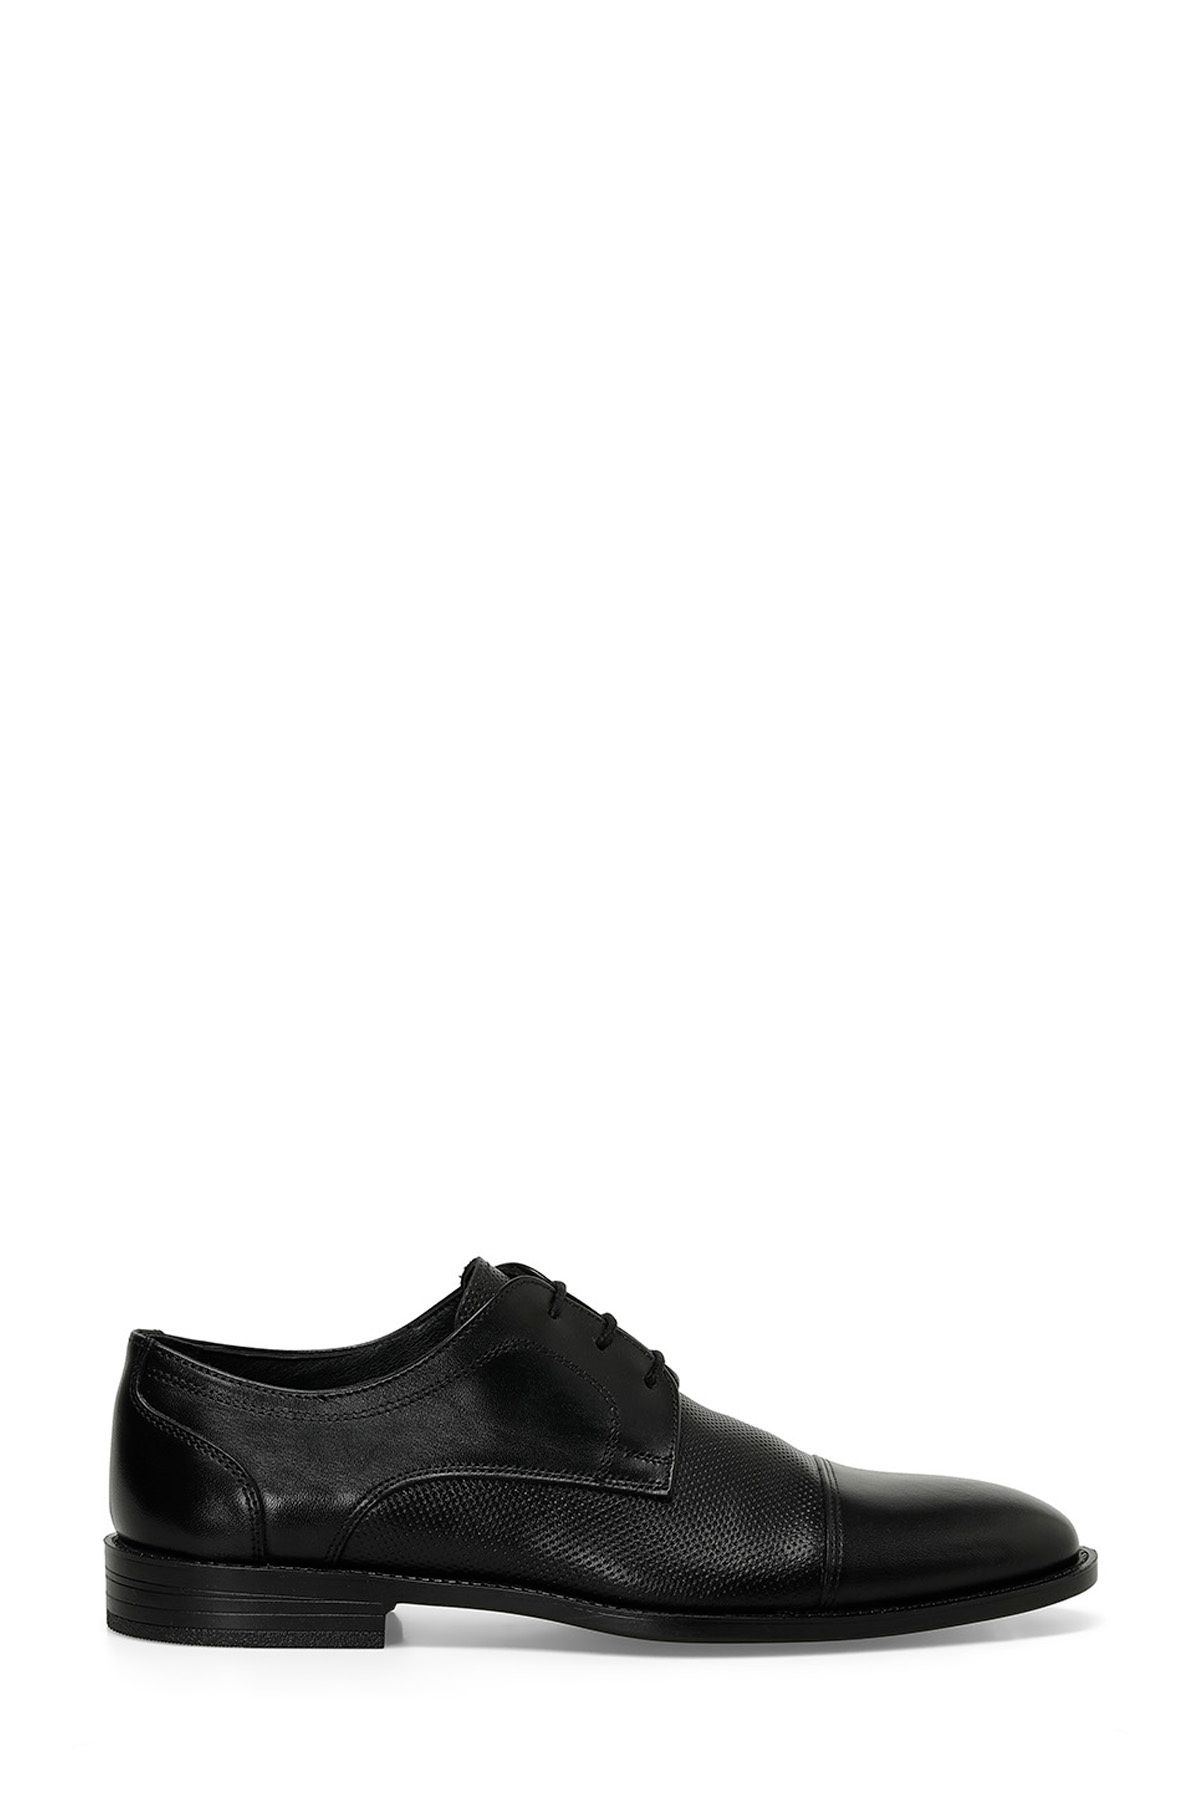 İnci INCI PERLA 4FX Siyah Erkek Klasik Ayakkabı